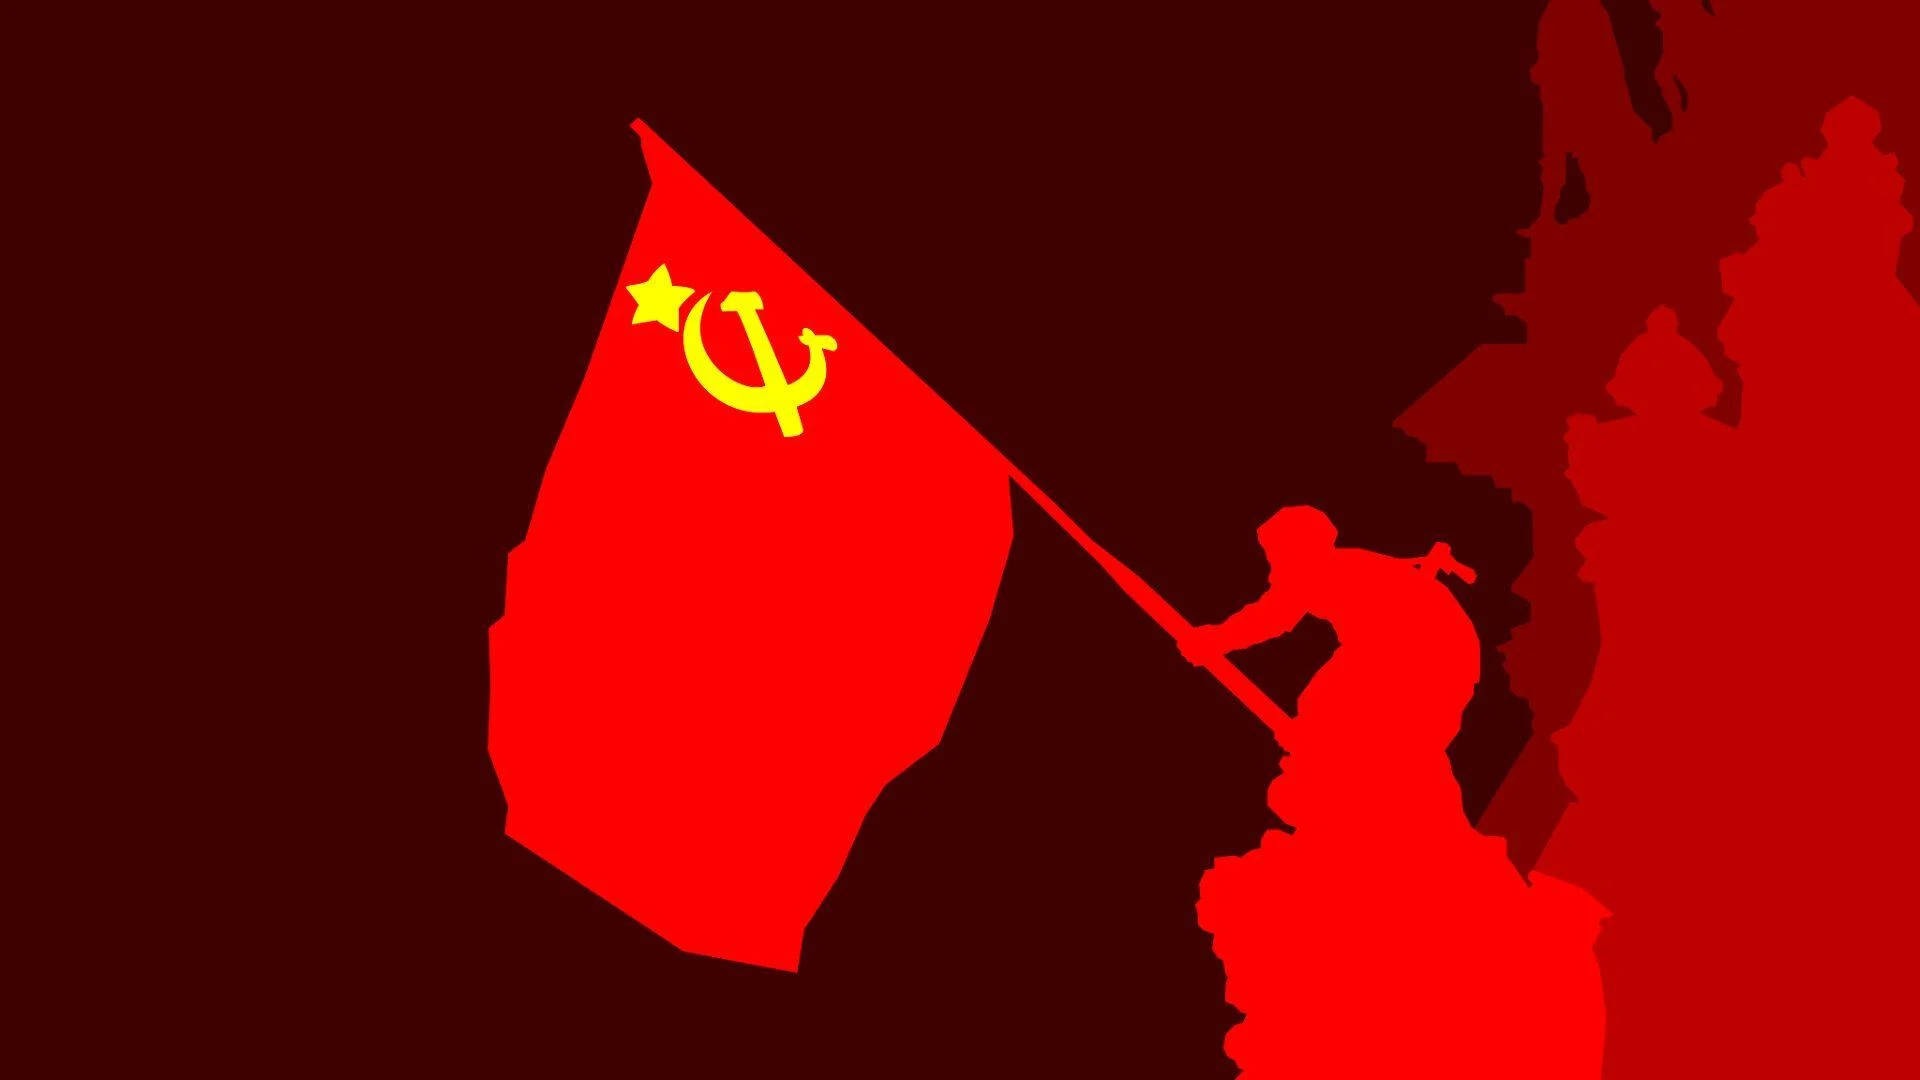 Sovjetunionensflagga I Röd Skugga. Wallpaper